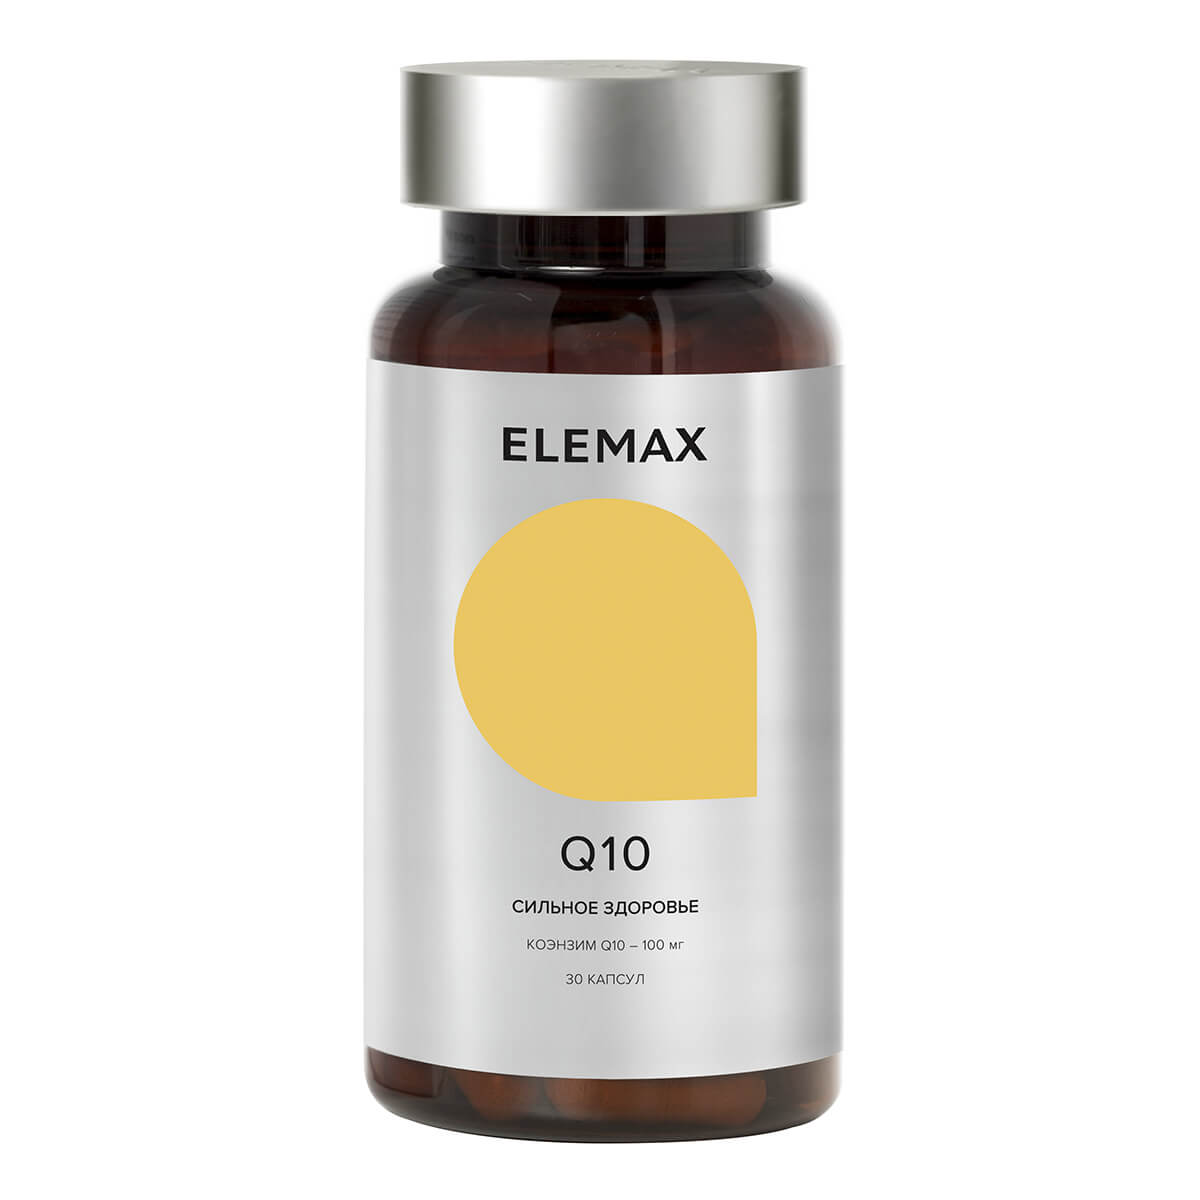 Биологически активная добавка к пище "Q10"капсулы 30 шт по 300 мг, Elemax - фото 1